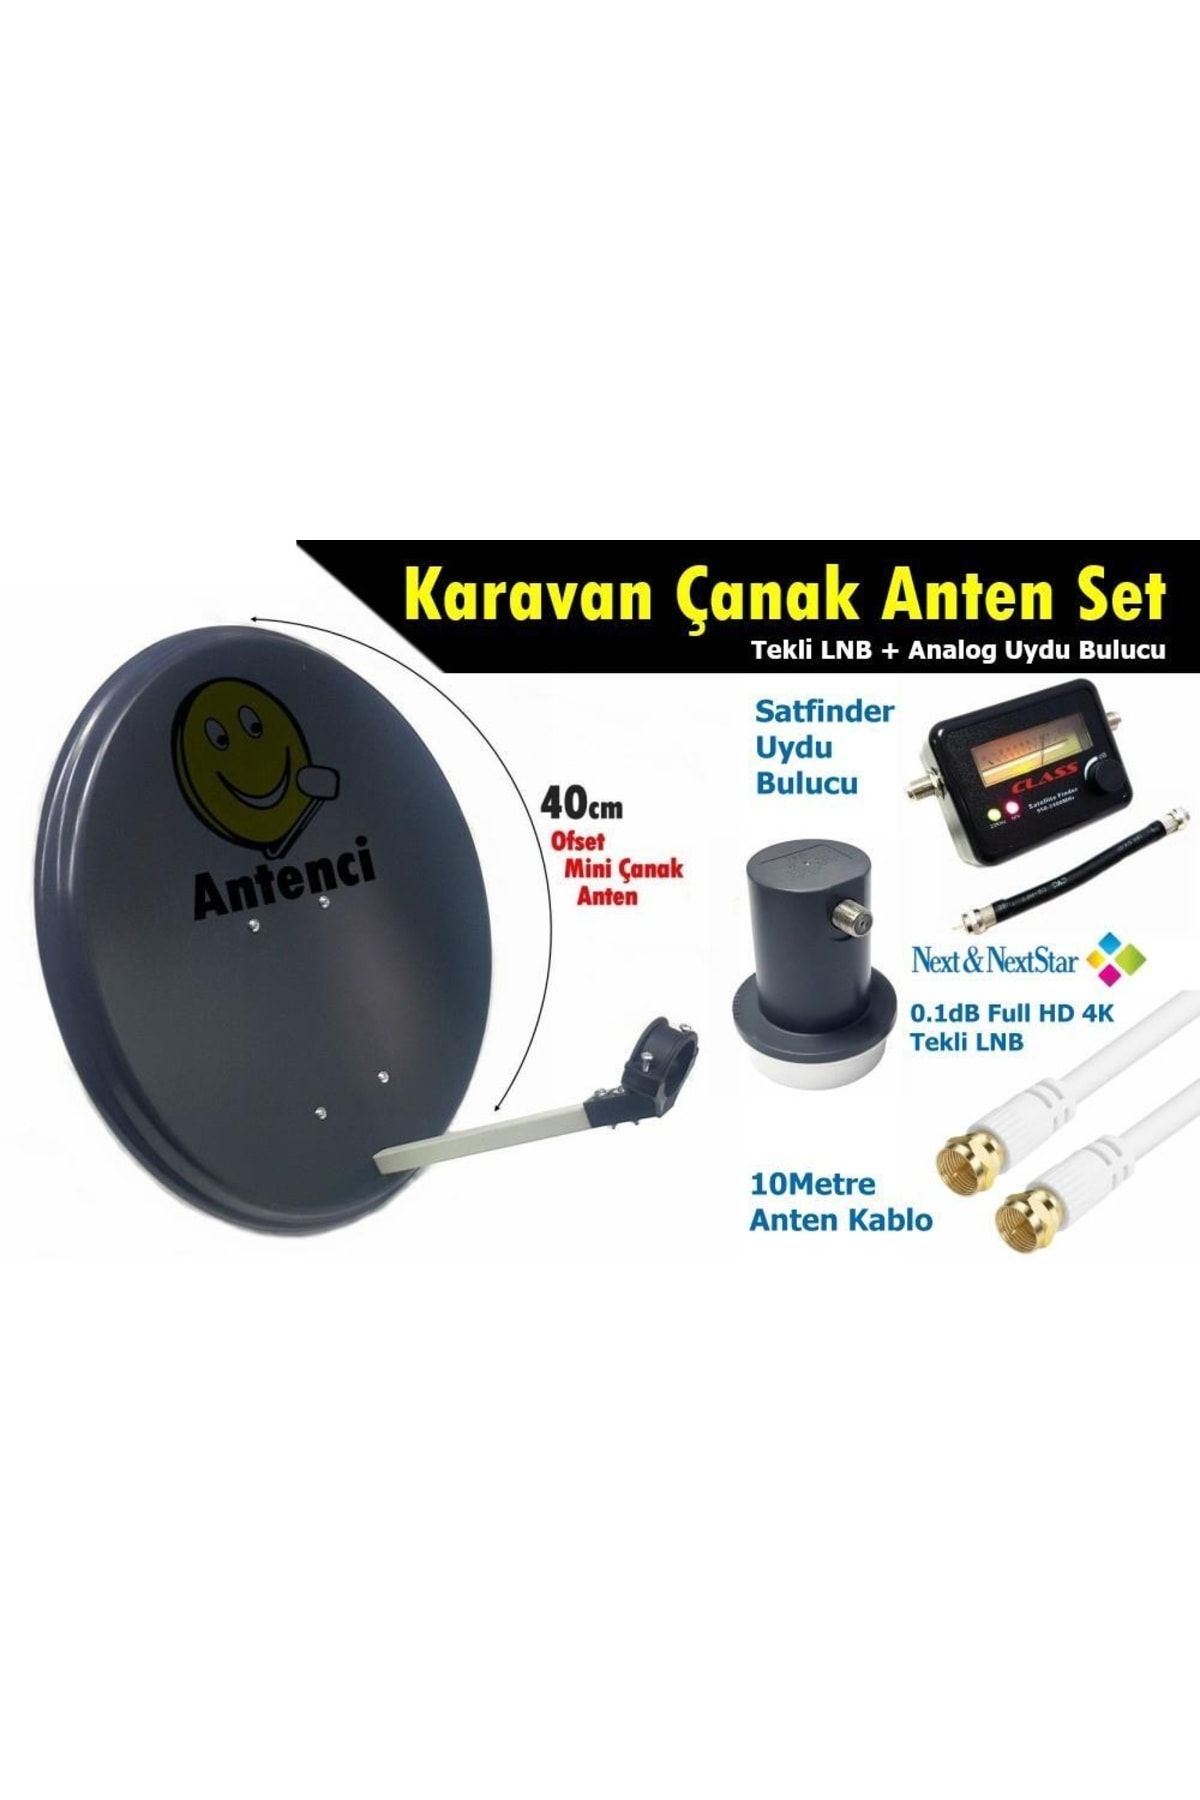 Antenci 40cm Karavan Çanak Anten Seti +analog Uydu Bulucu